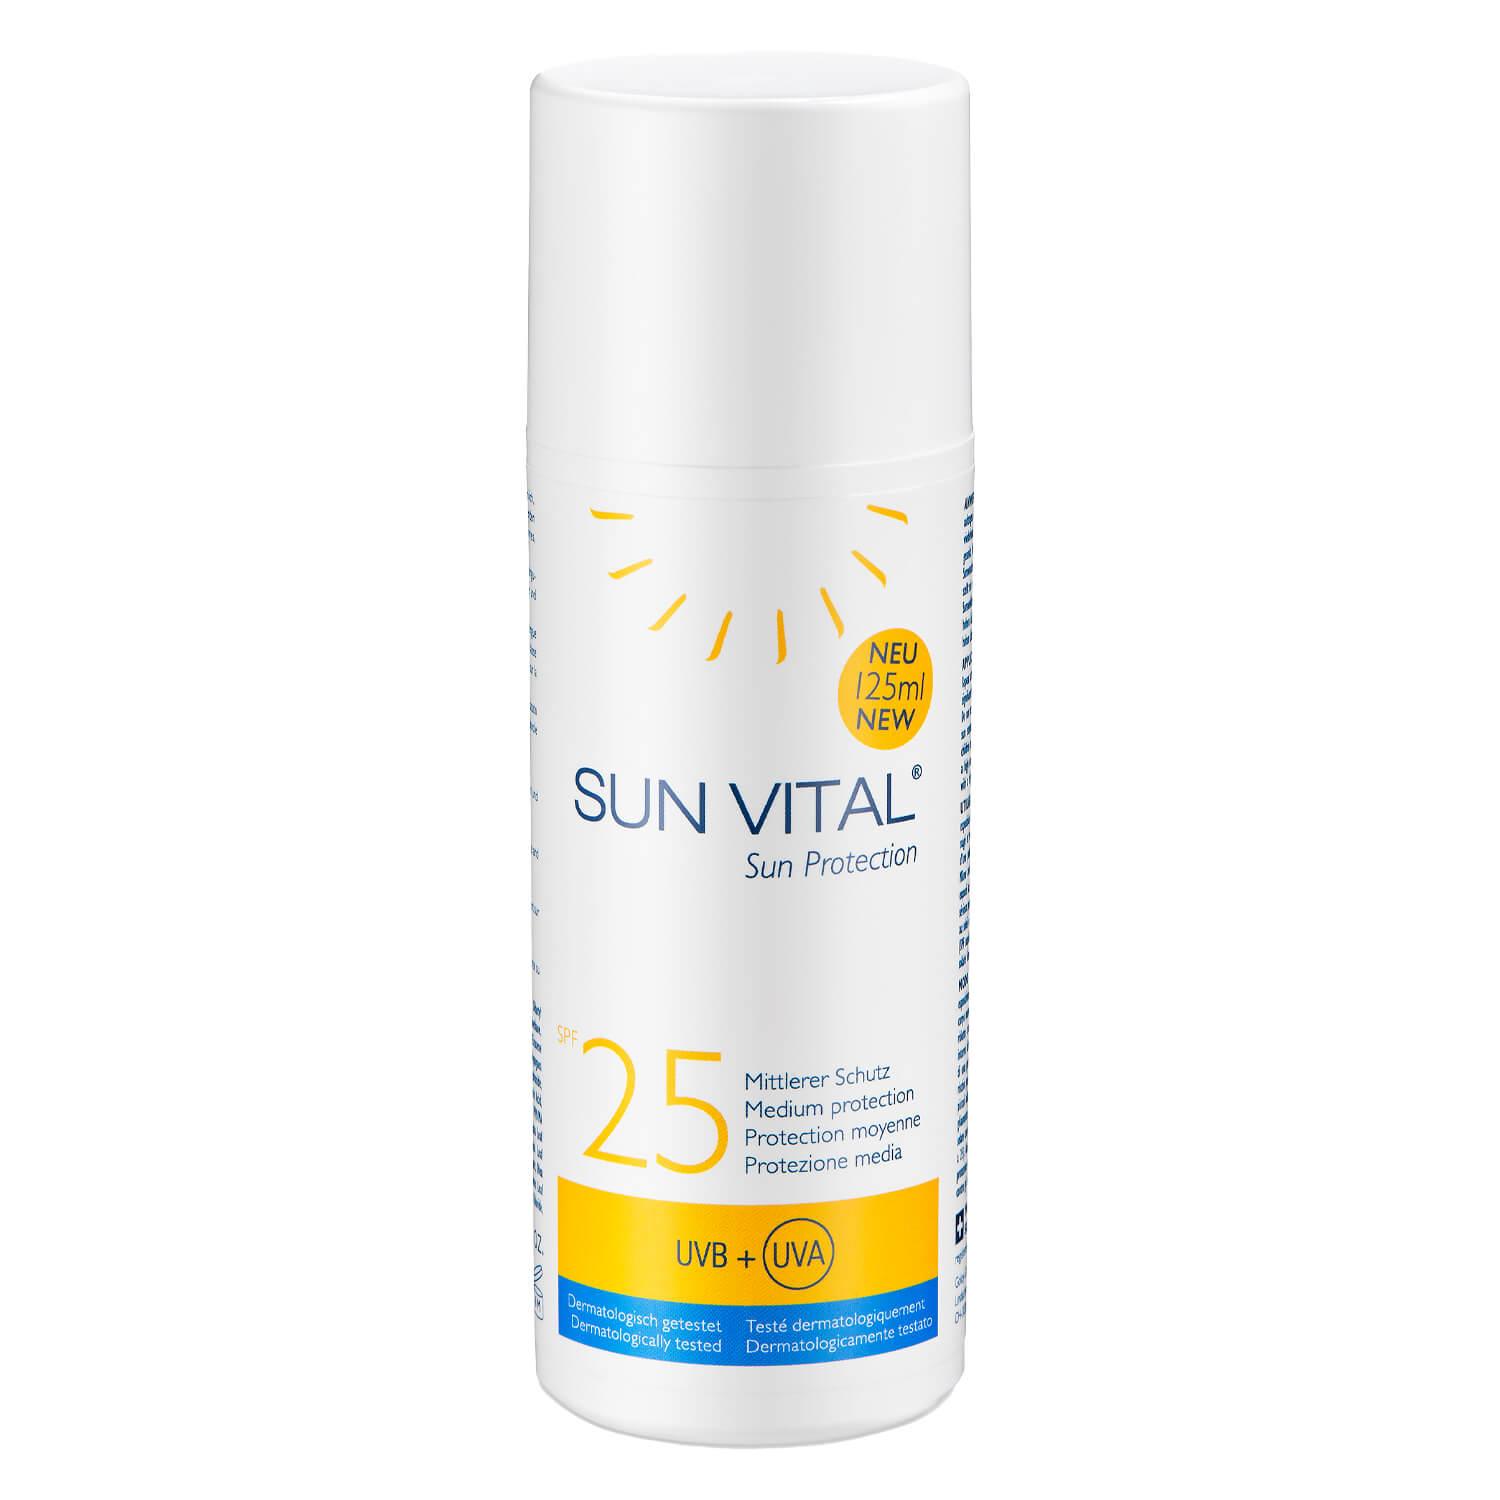 GOLOY - SUN VITAL Sun Protection SPF 25